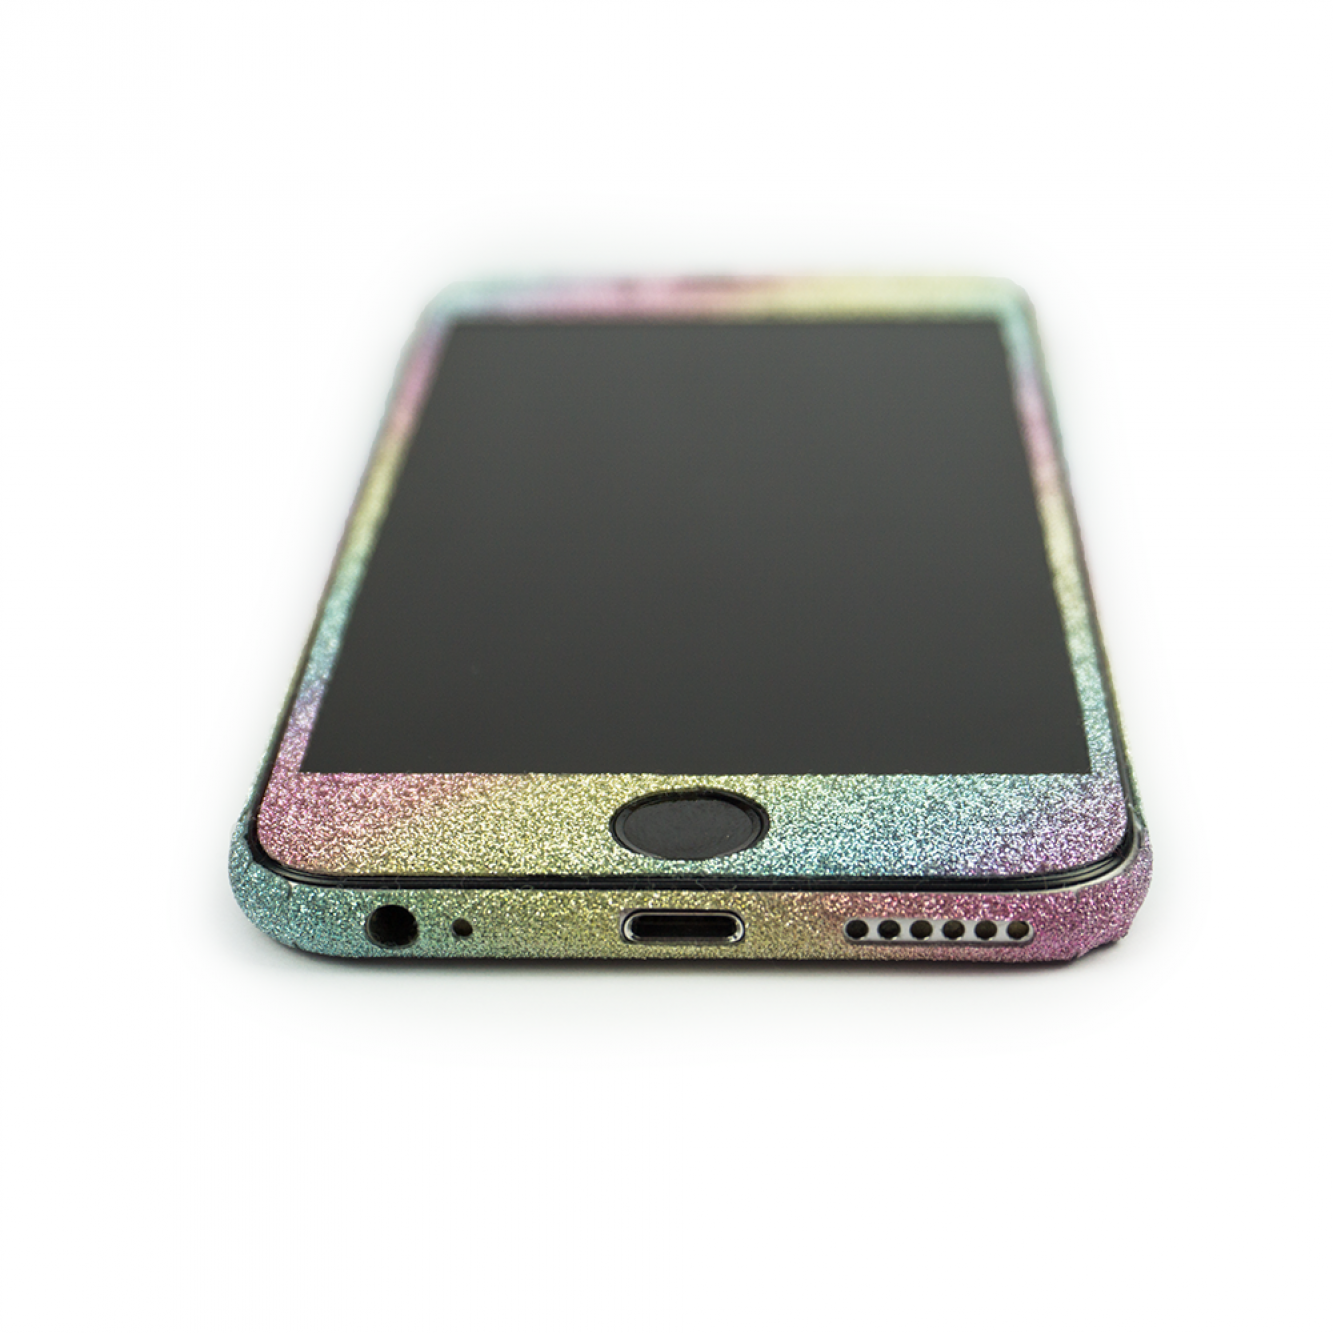 Glitzerfolie für iPhone 6 / 6s Skin Folie Schutzfolie Aufkleber Regenbogen